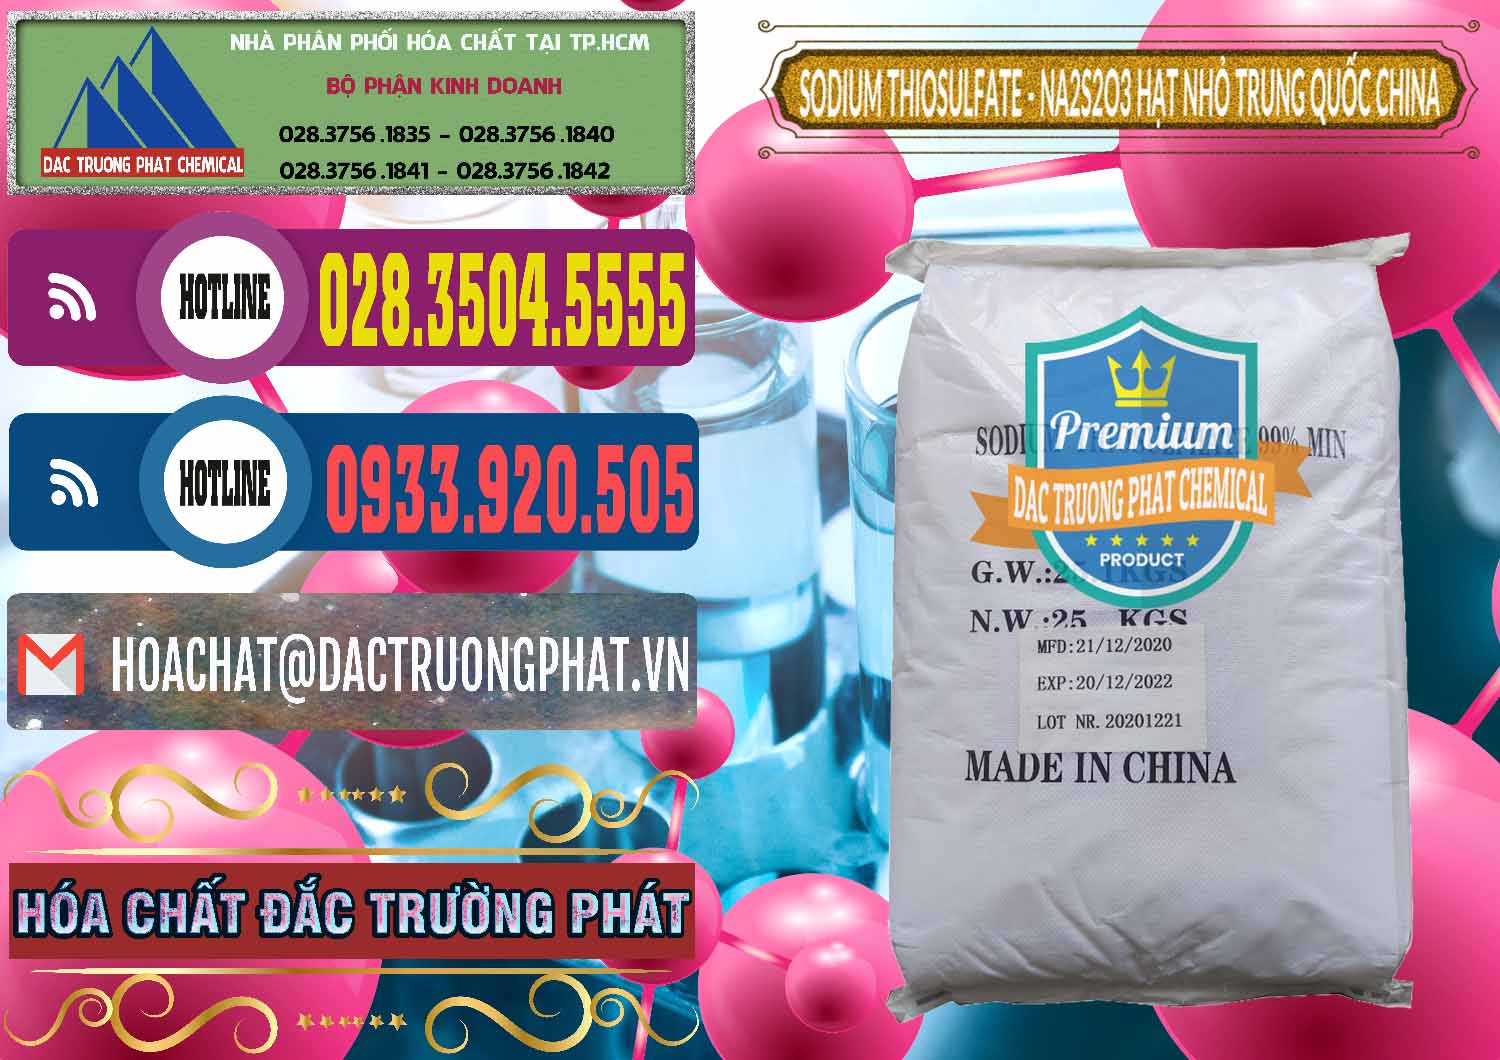 Đơn vị cung ứng & bán Sodium Thiosulfate - NA2S2O3 Hạt Nhỏ Trung Quốc China - 0204 - Chuyên cung cấp _ bán hóa chất tại TP.HCM - muabanhoachat.com.vn